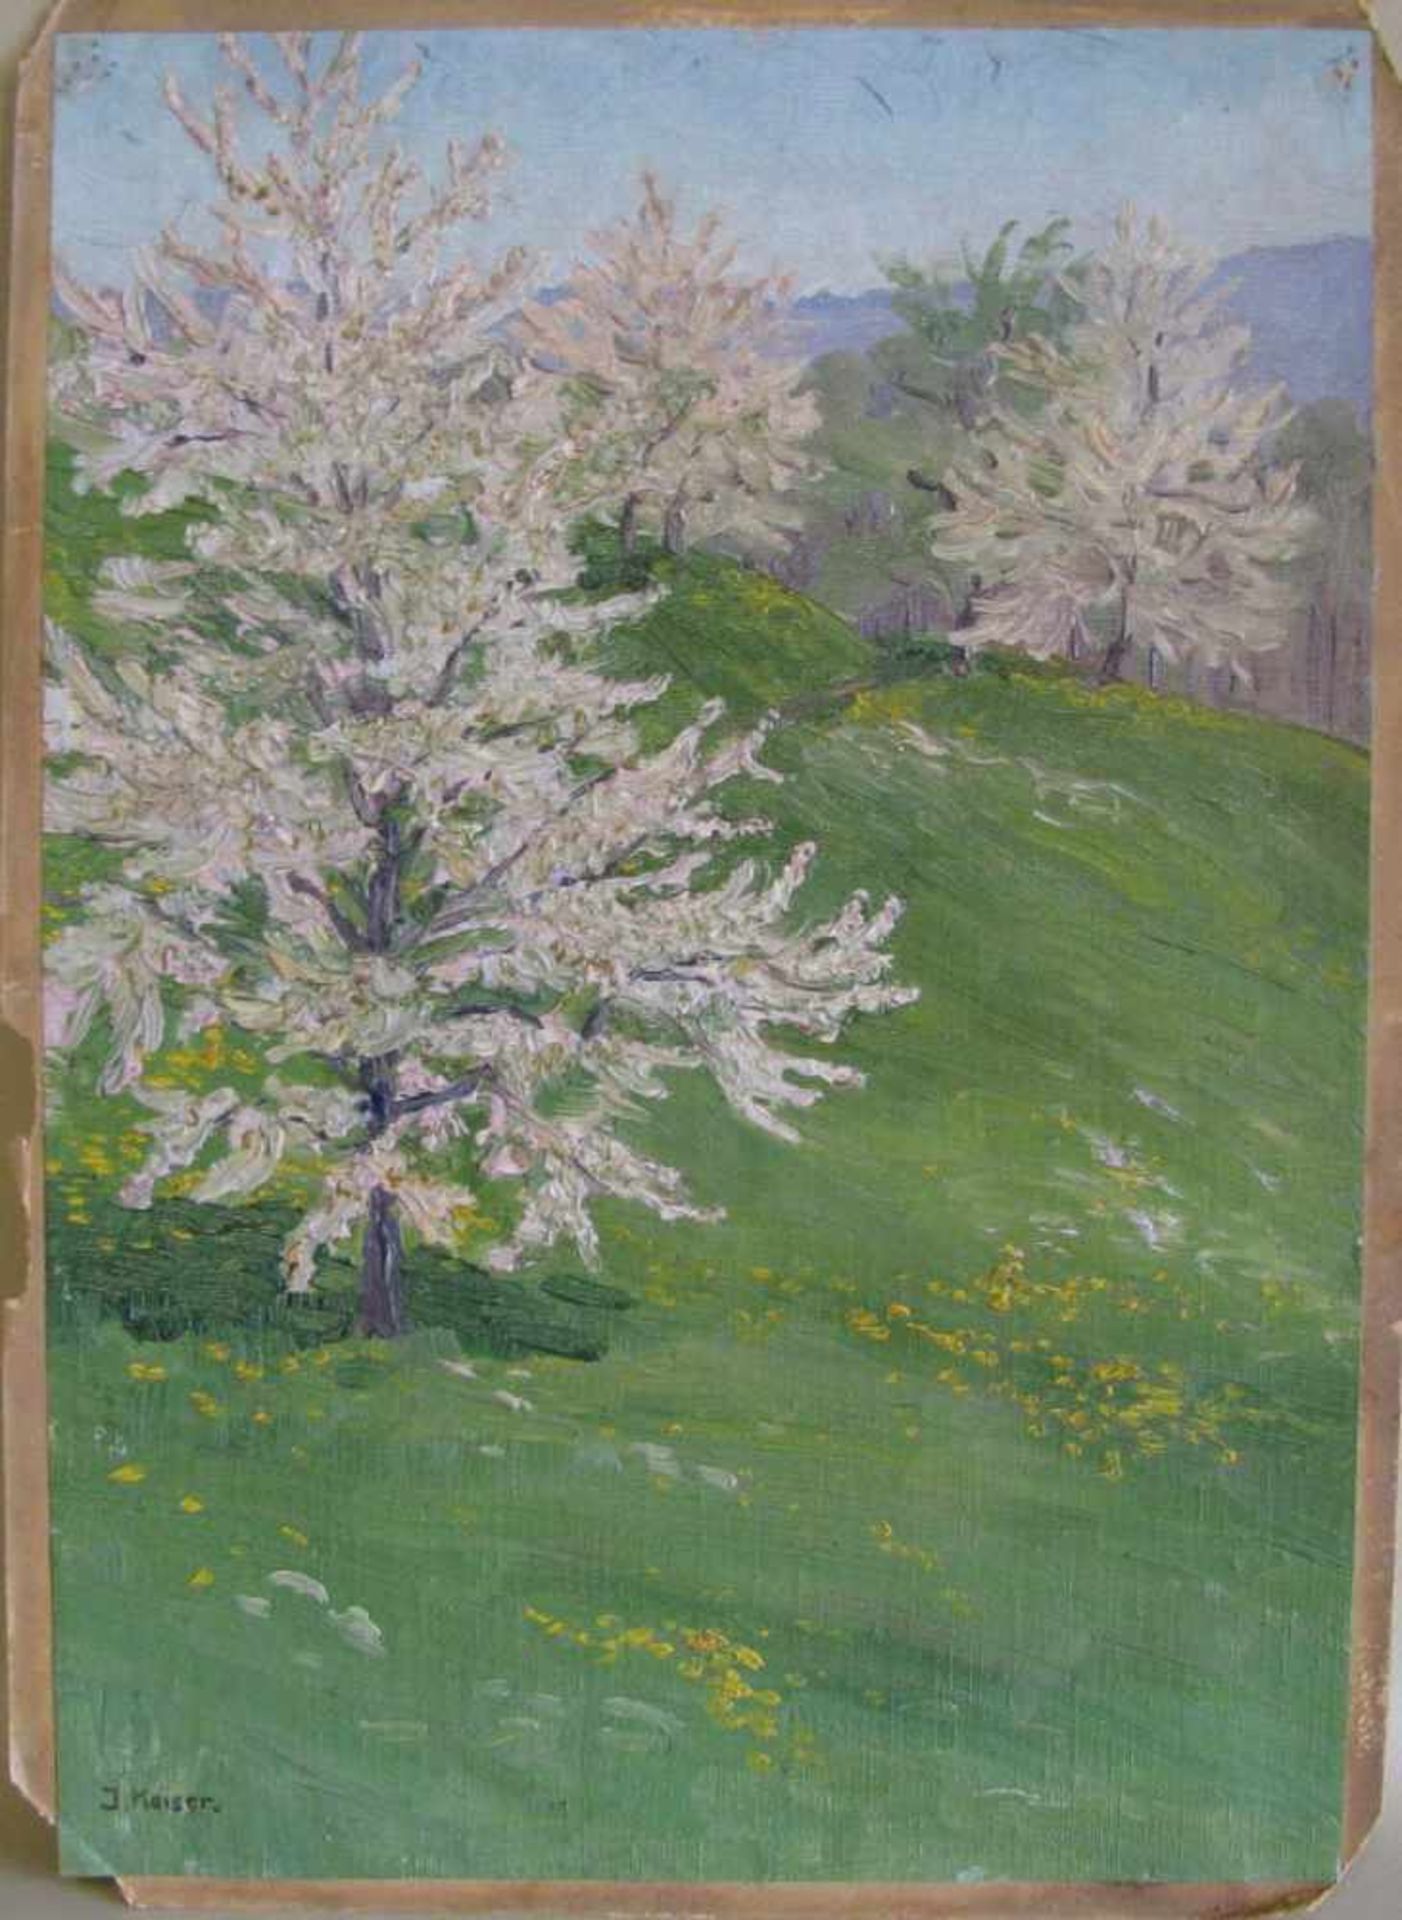 Keiser, J., wohl Schweizer Maler, 'Blühende Bäume am Utliberg', li.u.sign., Öl/Leinwand, 43 x 30 cm,